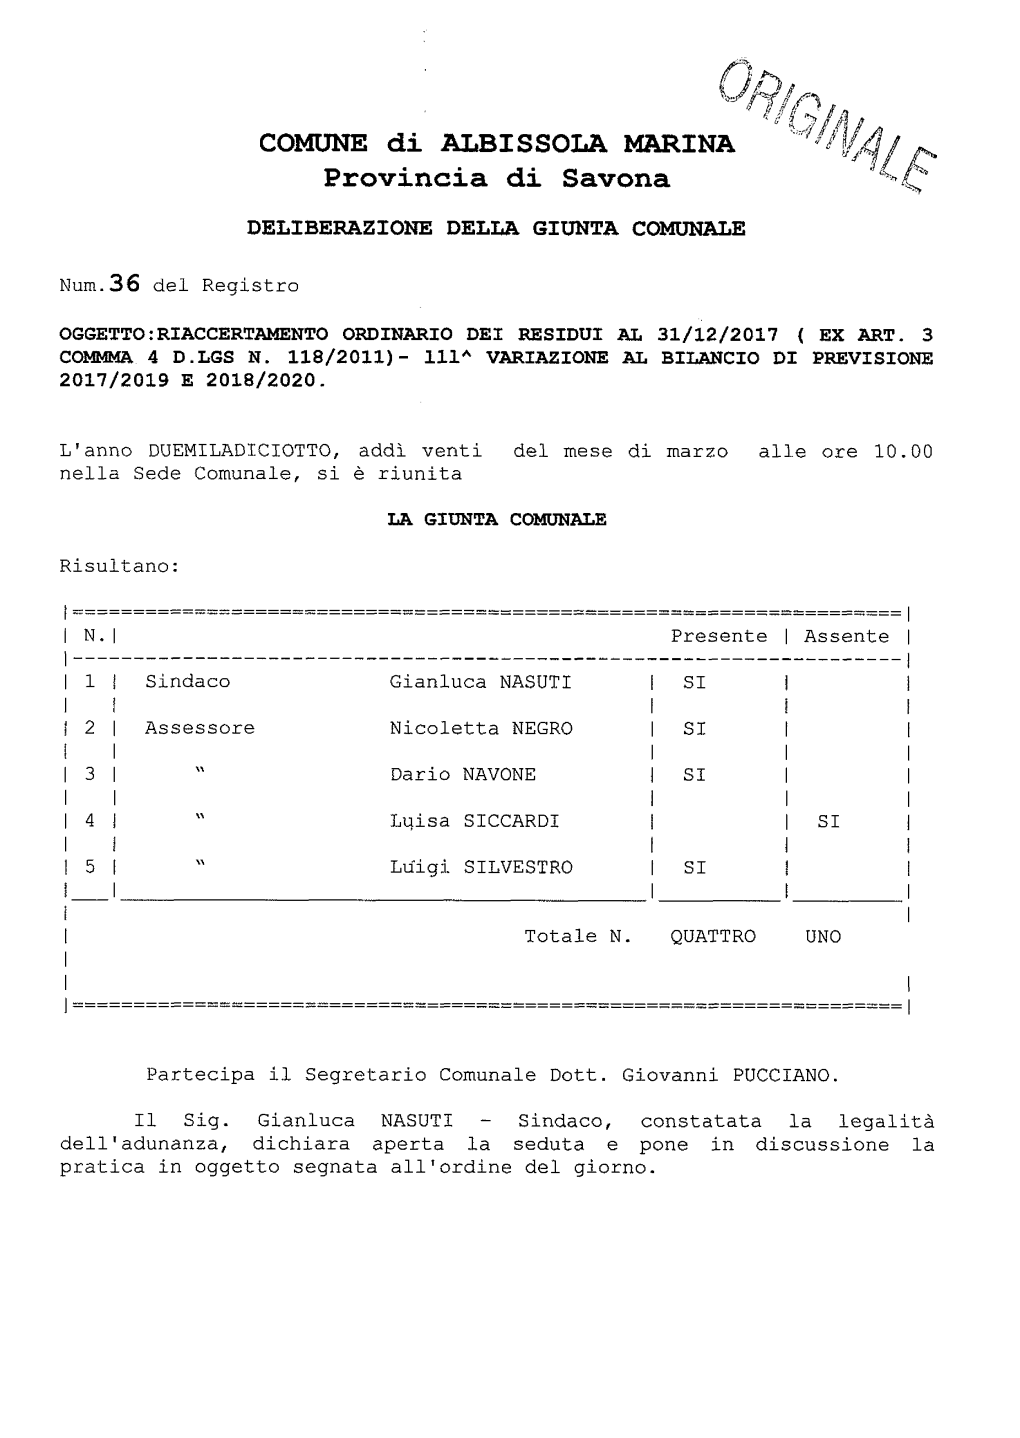 COMUNE Di ALBISSOLA MARINA Provincia Di Savona DELIBERAZIONE DELLA GIUNTA COMUNALE